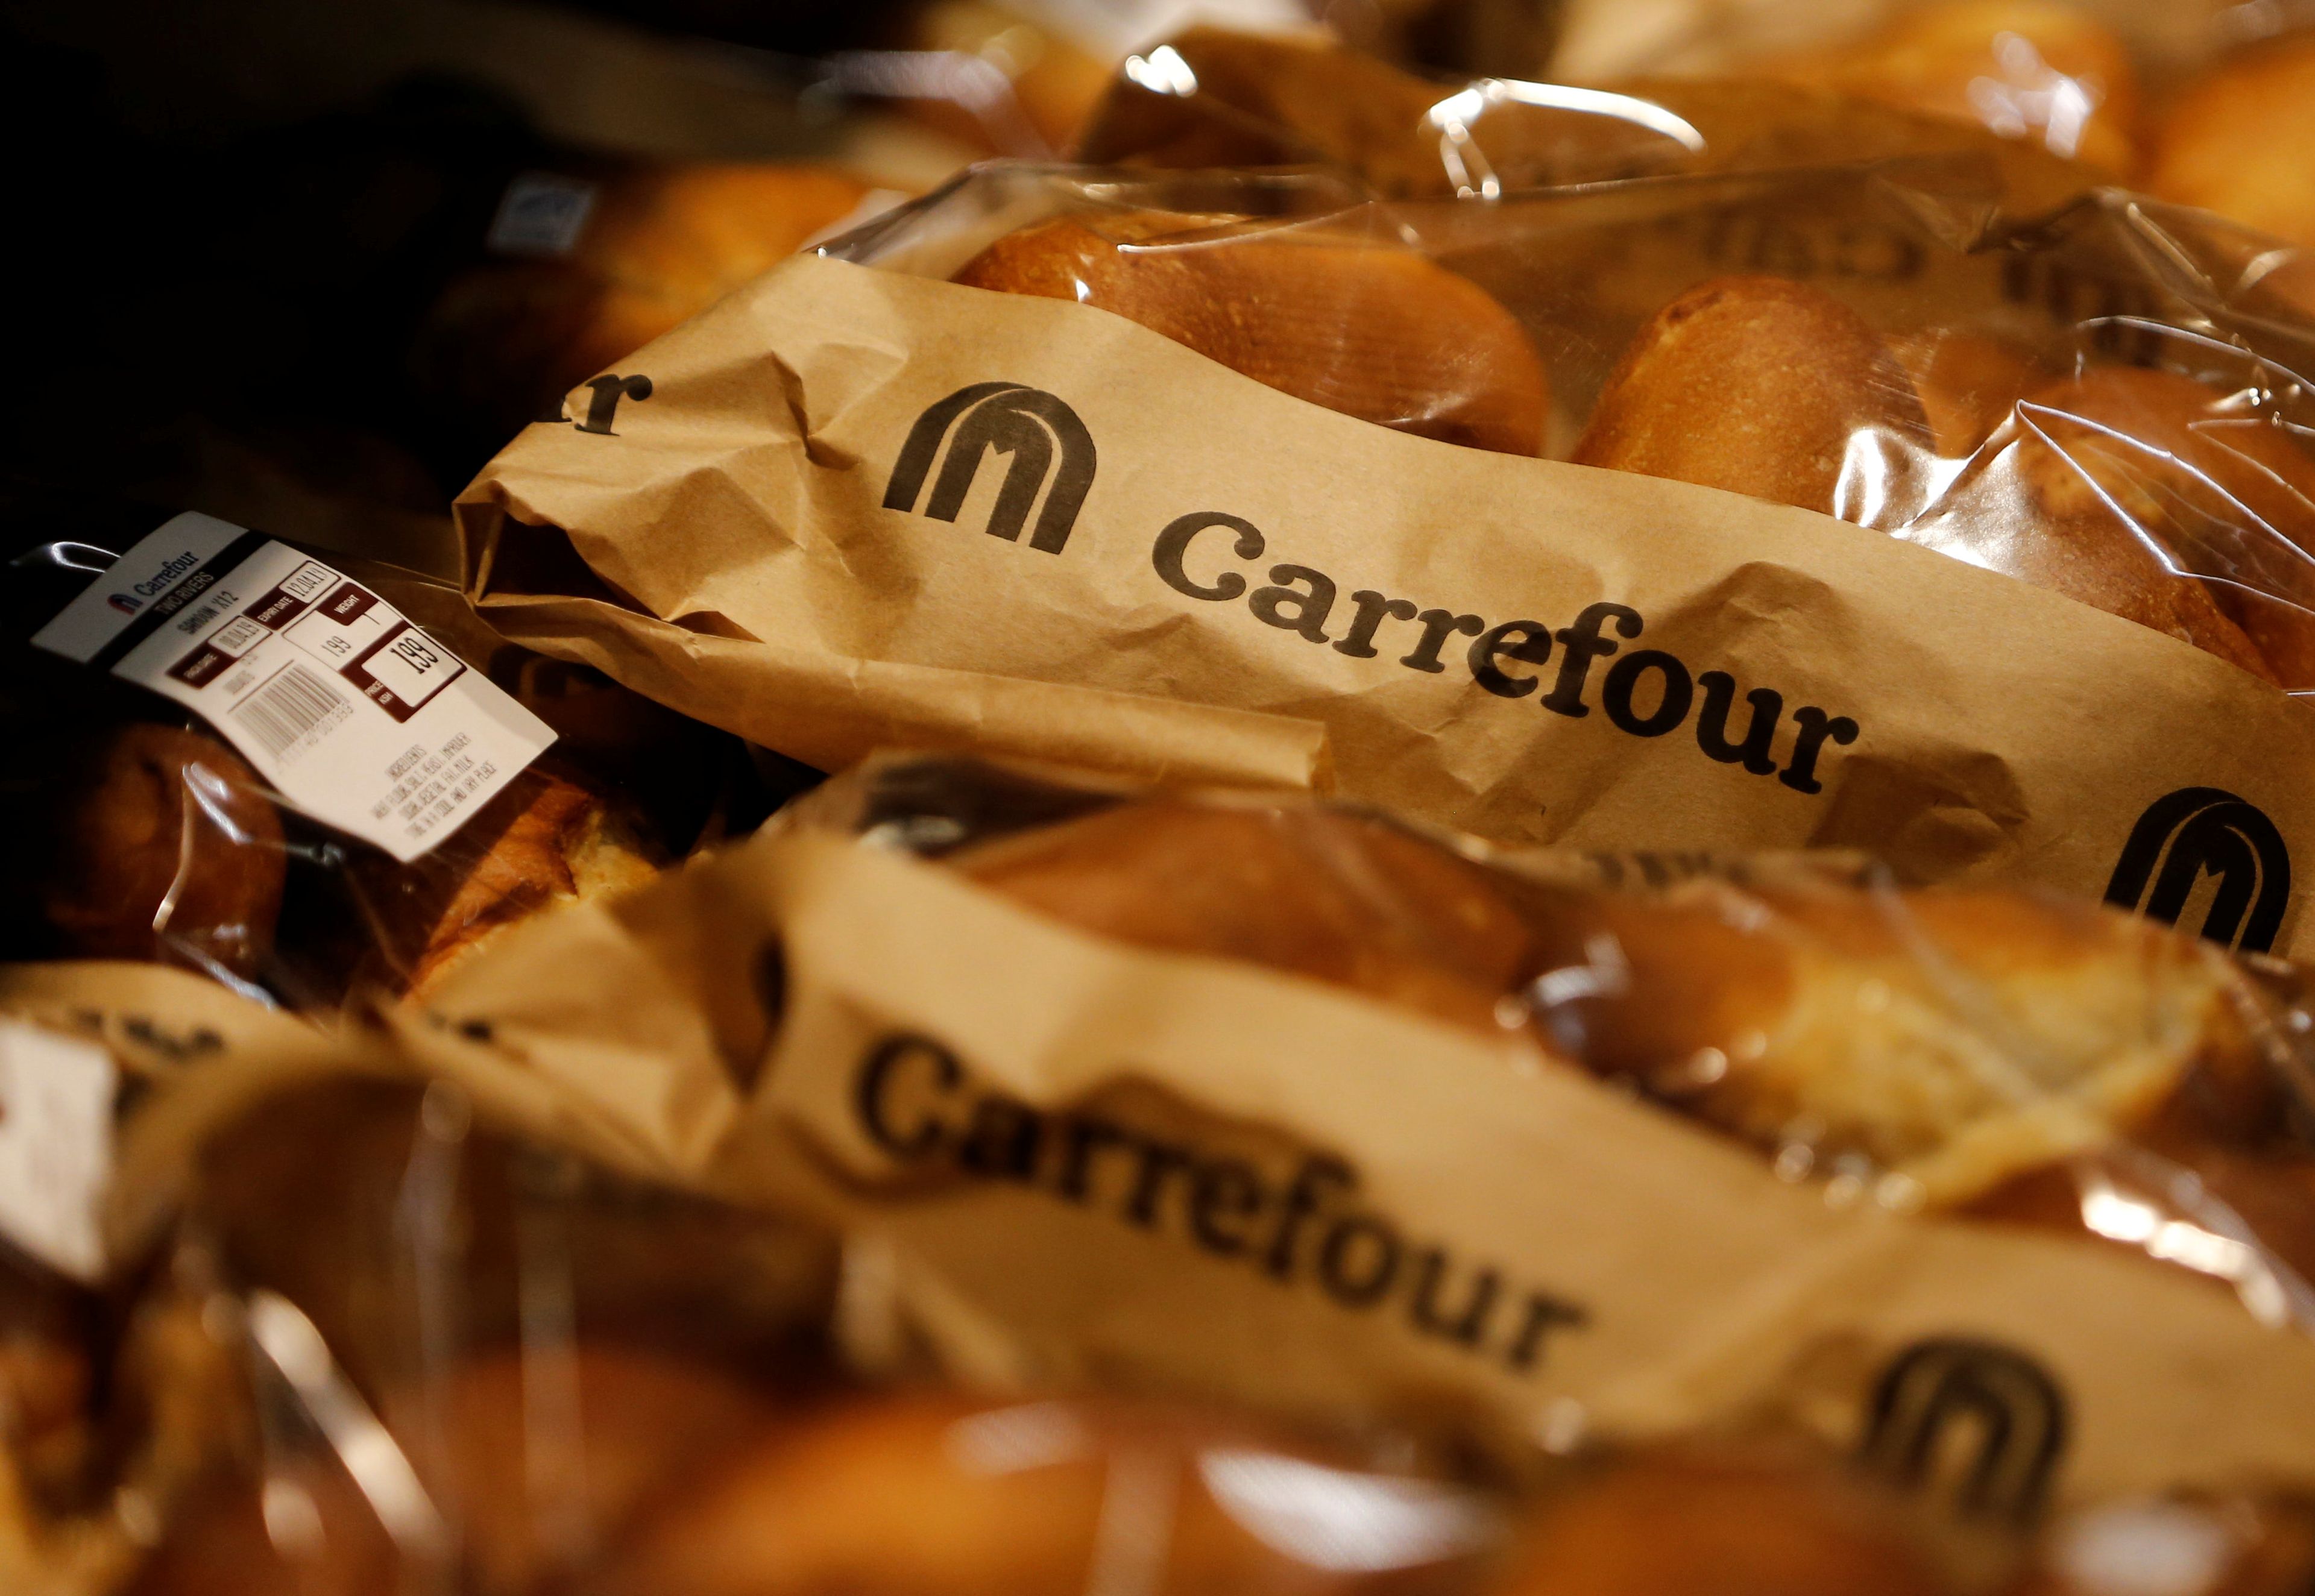 Pan de Carrefour.